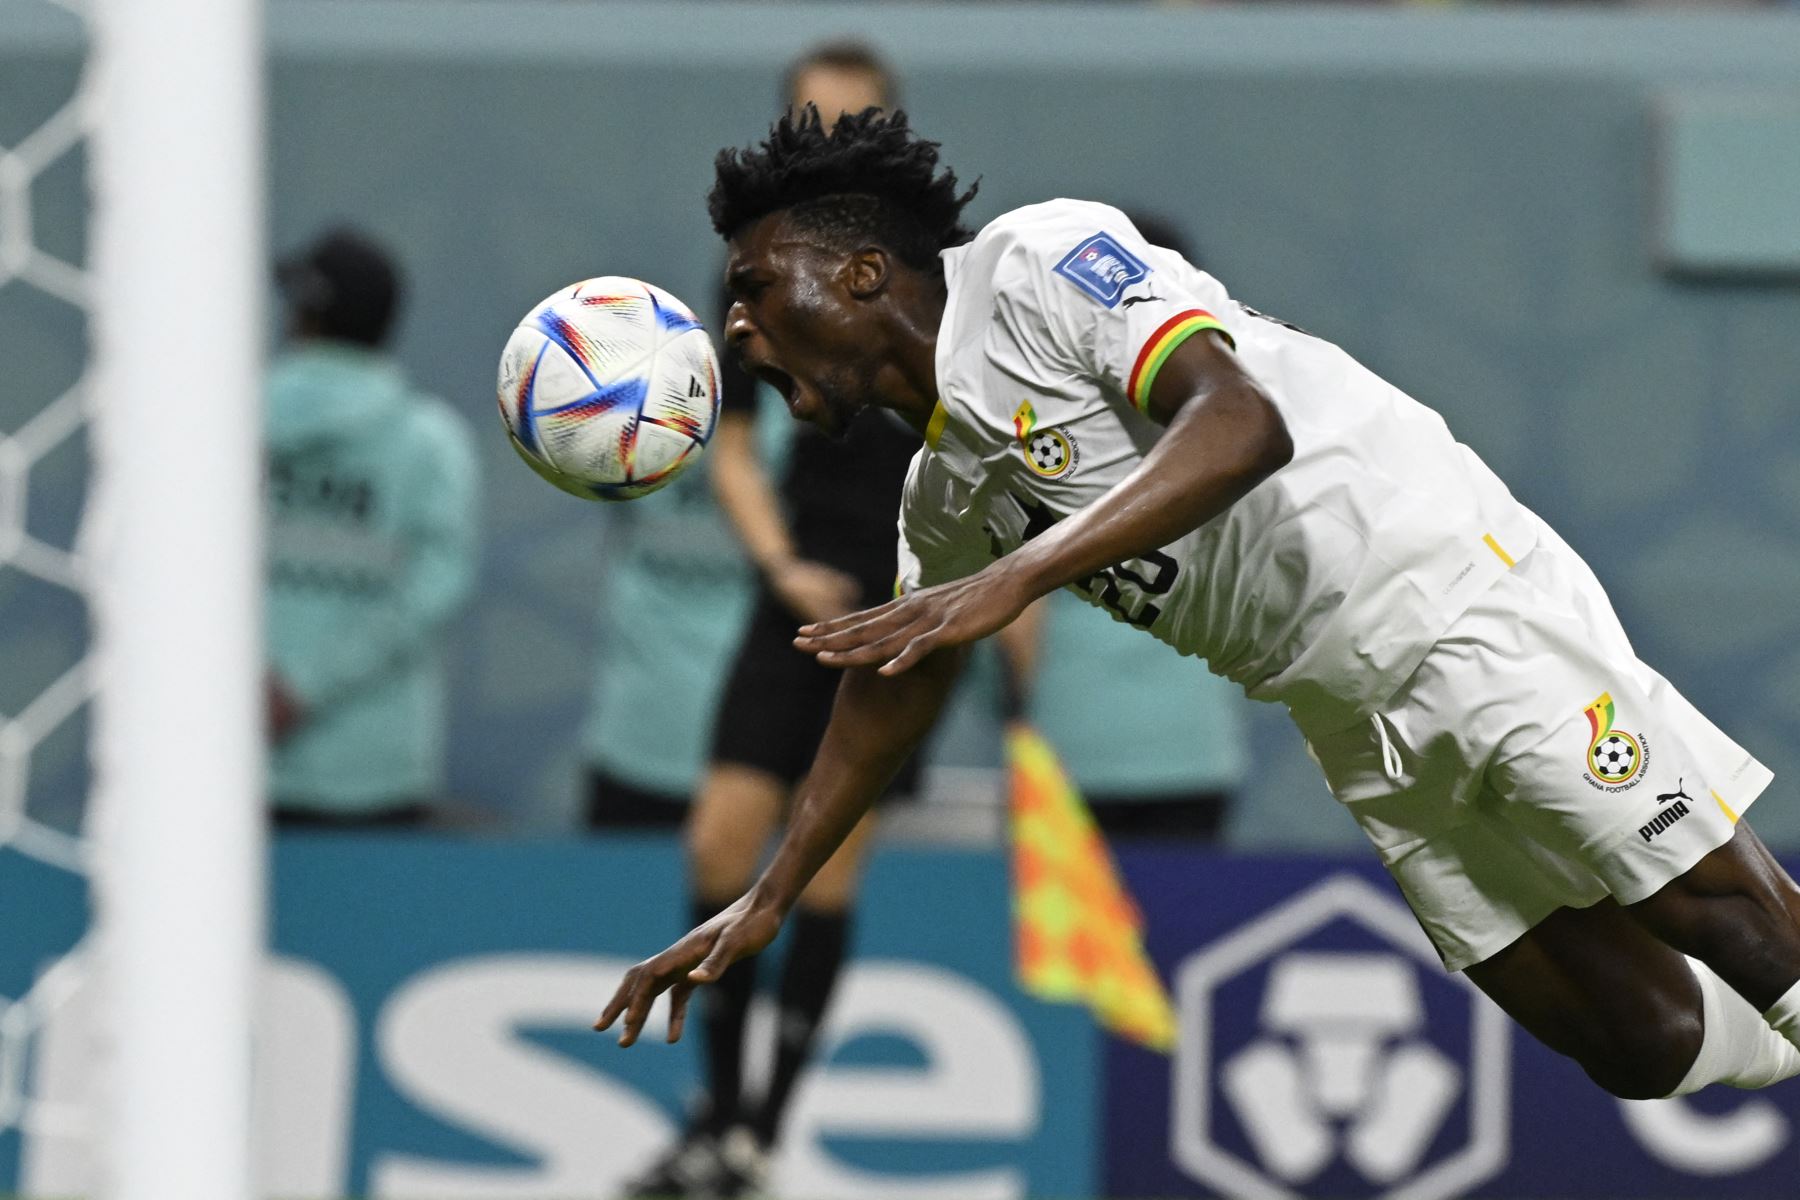 El mediocampista de Ghana  Mohammed Kudus reacciona después de recibir una falta del portero de Uruguay Sergio Rochet (no visto) durante el partido de fútbol del Grupo H de la Copa Mundial de Qatar 2022 entre Ghana y Uruguay en el Estadio Al-Janoub en Al-Wakrah, al sur de Doha el 2 de diciembre de 2022.